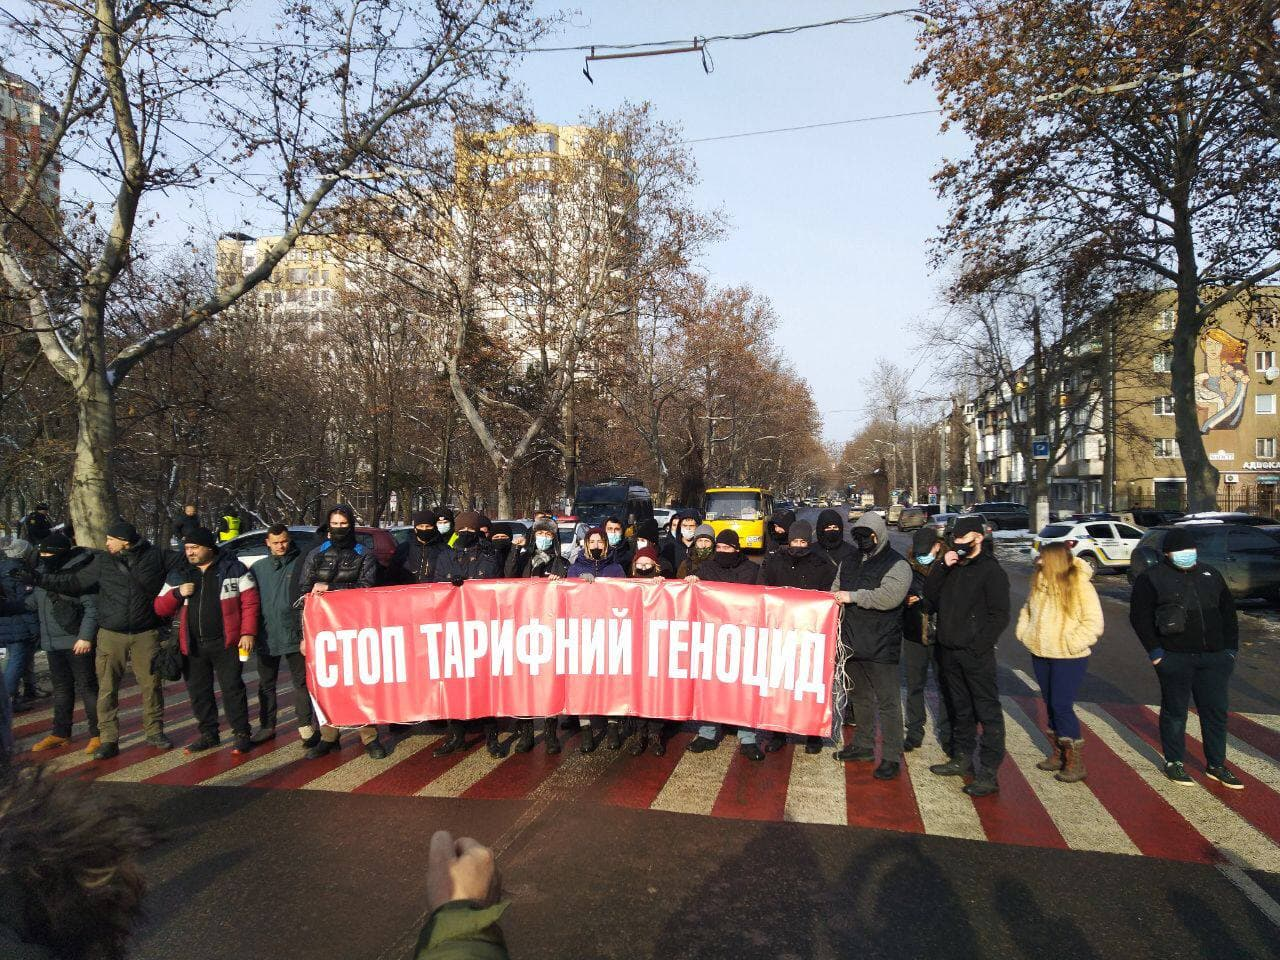 Мітинг в Одесі. Фото: Стоп тарифний геноцид